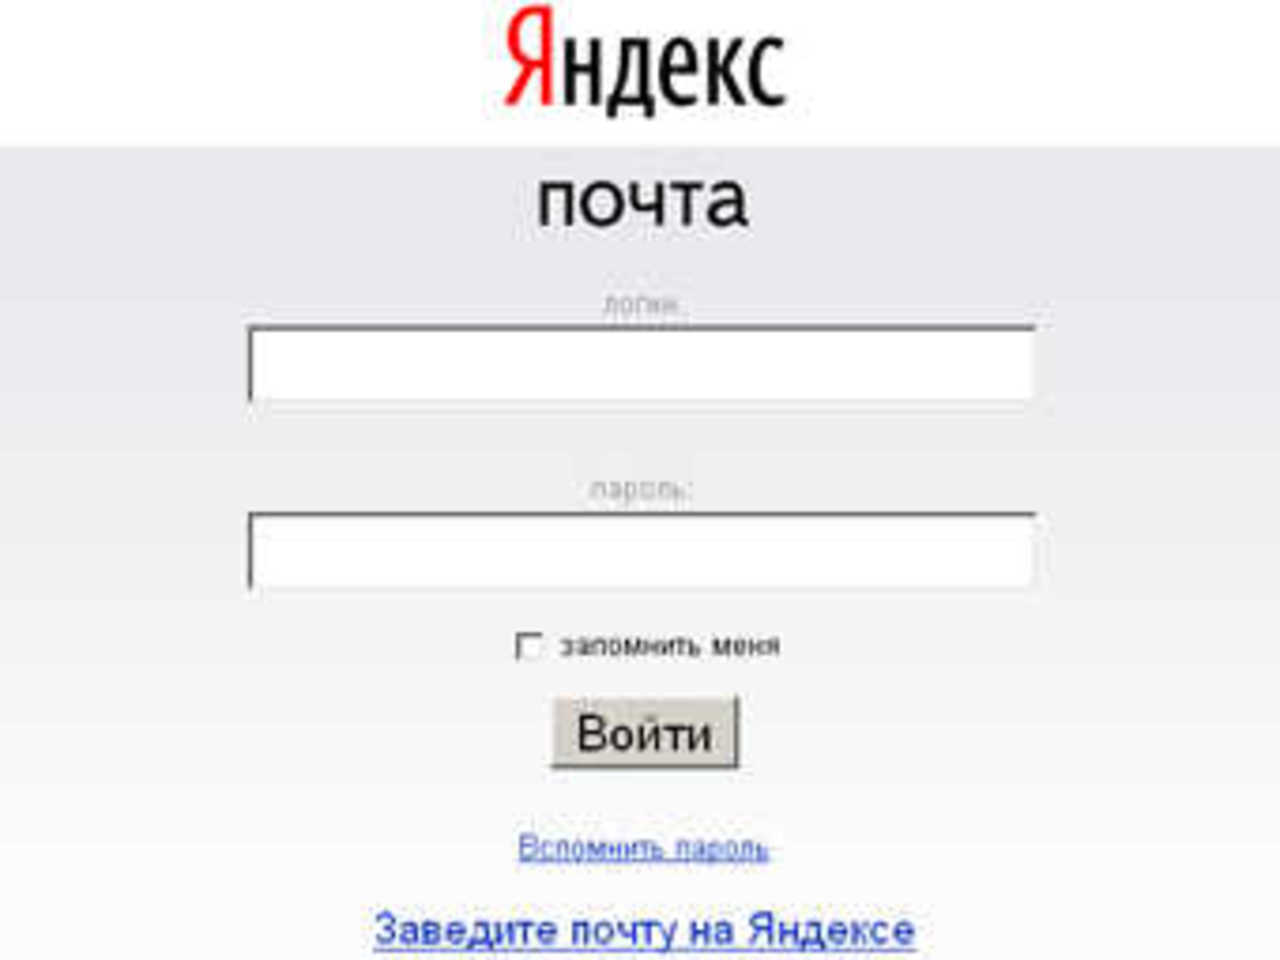 Яндекс.почта войти